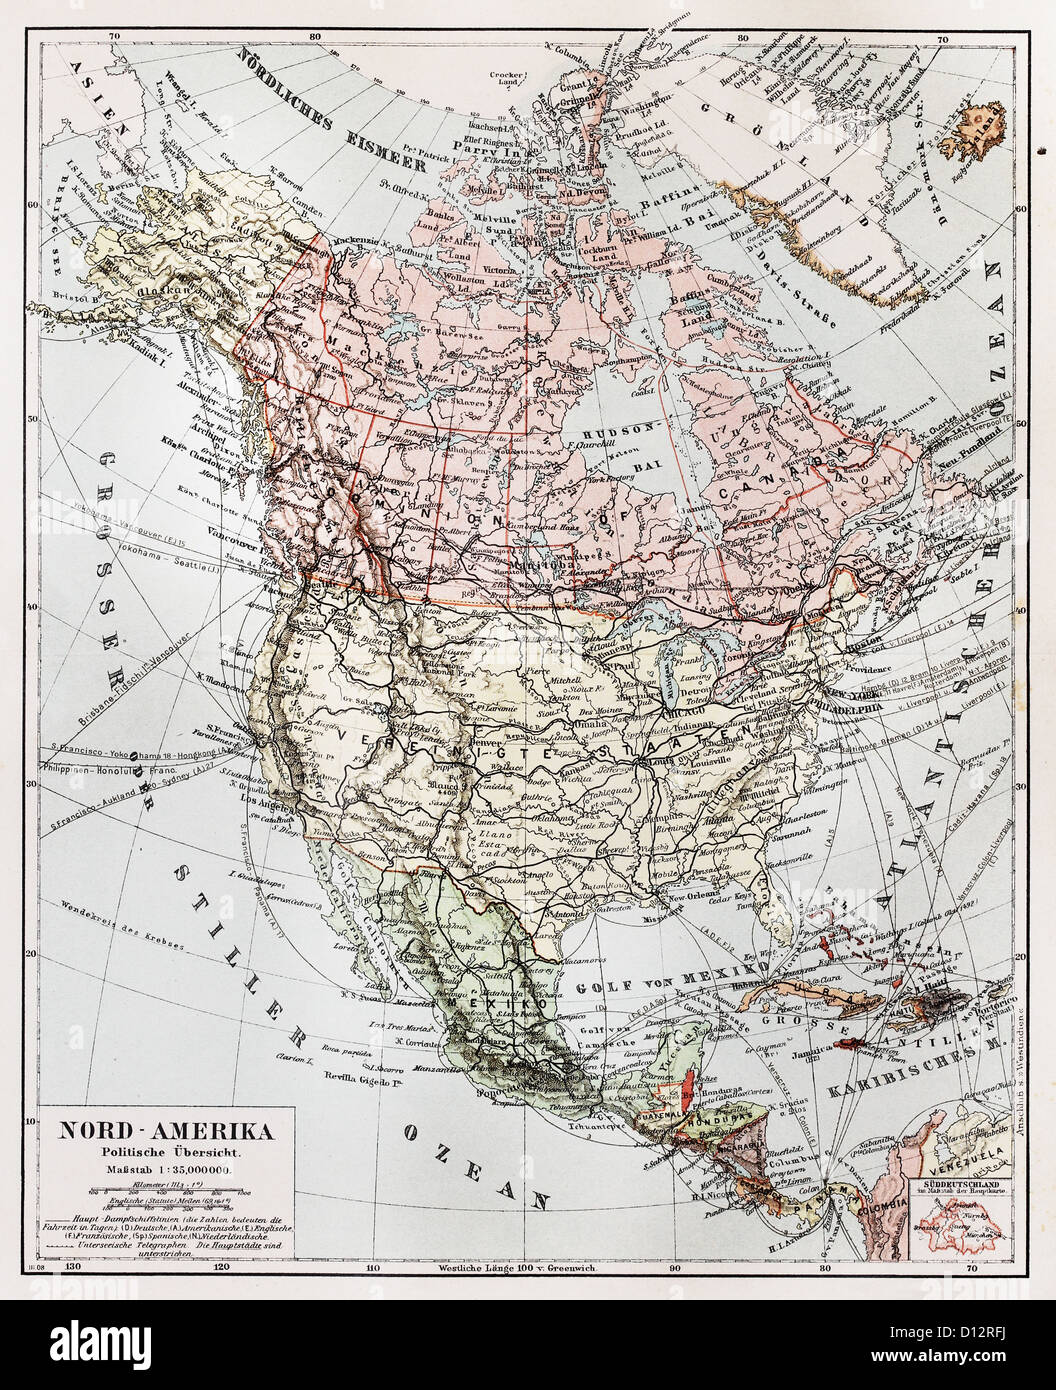 Vintage mapa político del continente de América del Norte a finales del siglo XIX. Foto de stock